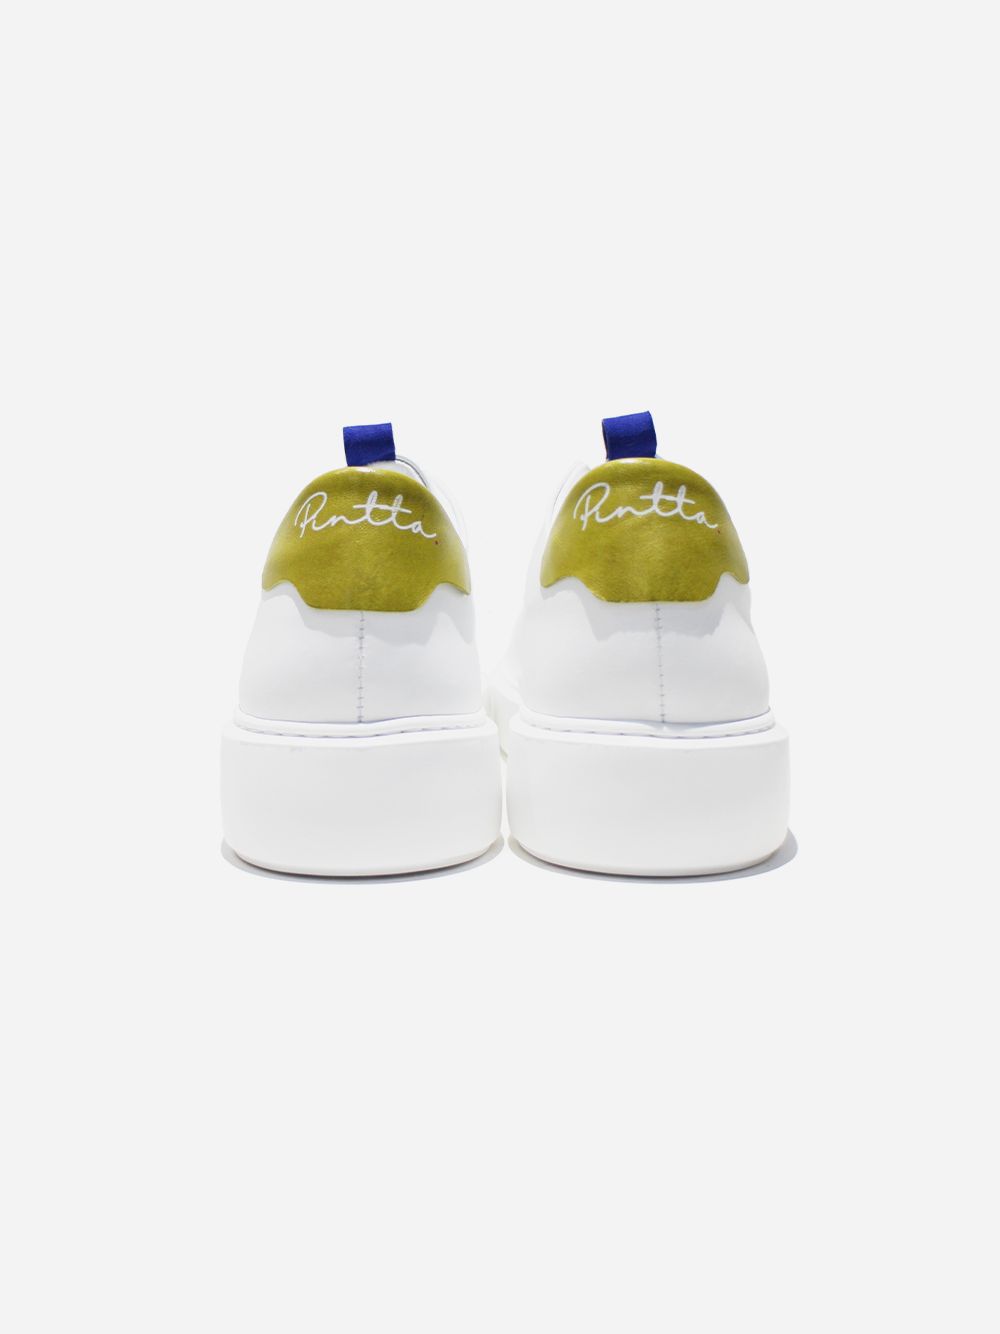 Paris Yellow Sneakers 